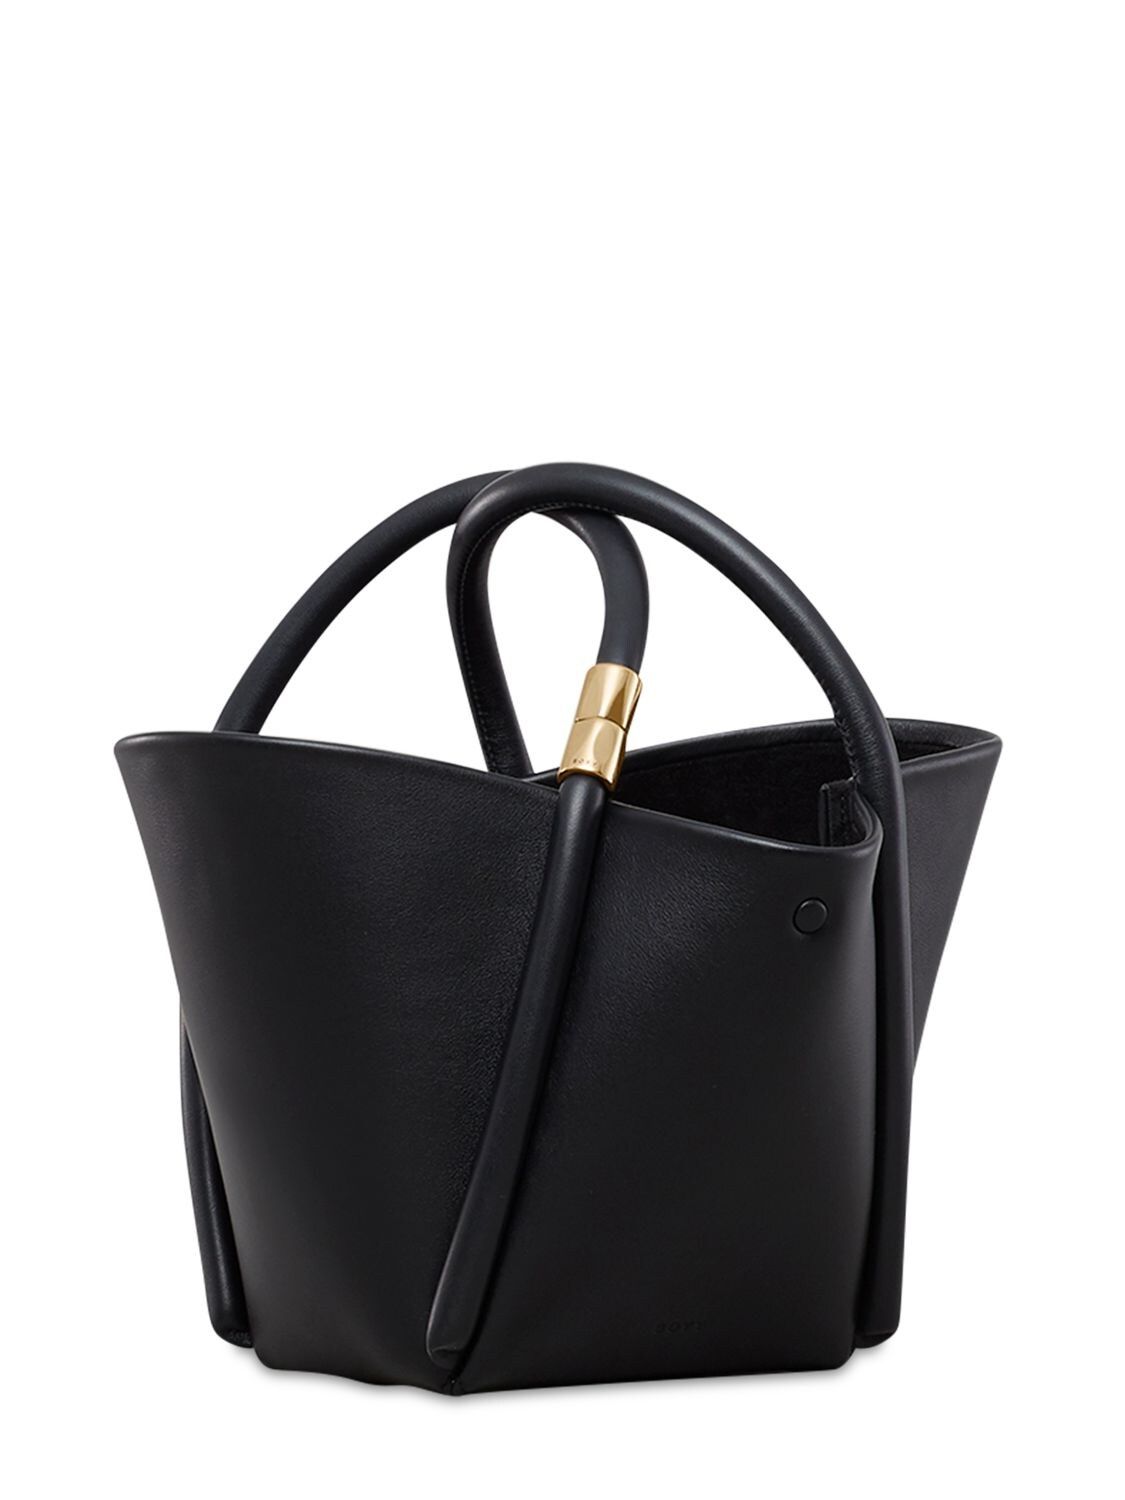 Boyy - Lotus 12 ala leather top handle bag - Black | Luisaviaroma | Luisaviaroma